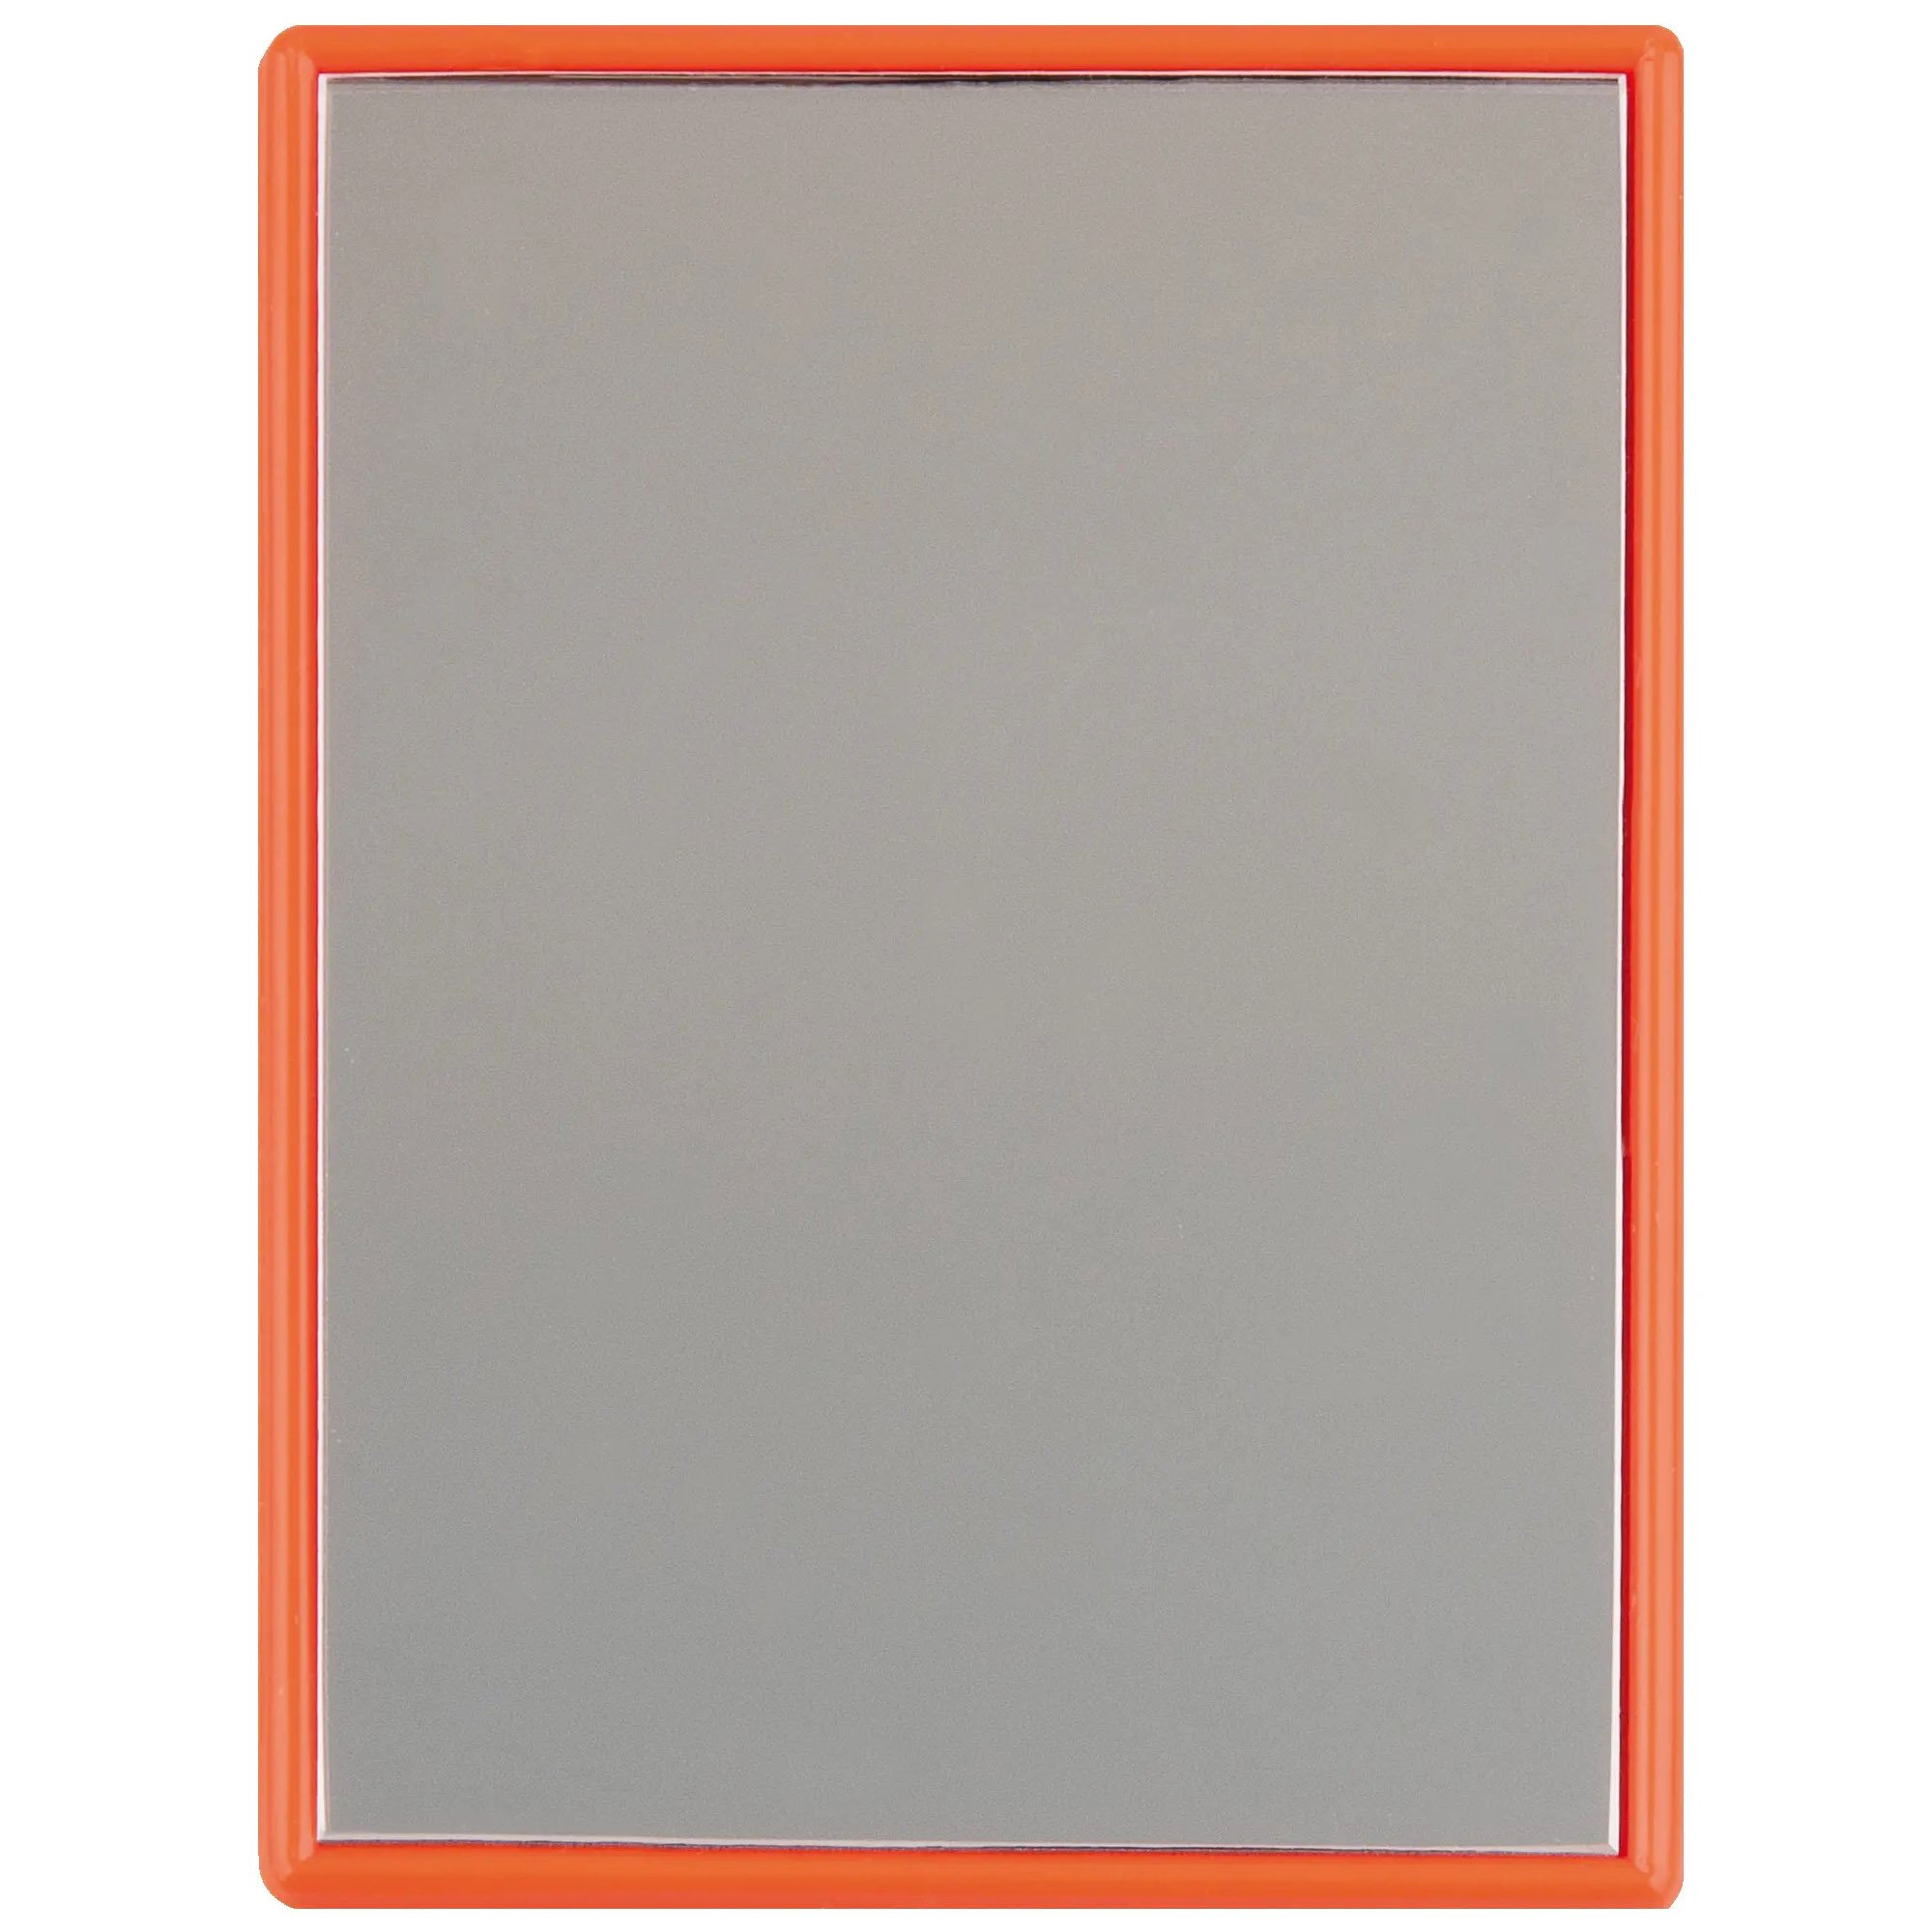 Зеркало карманное Titania 8.5х6 см оранжевое (1550 L оранж) - фото 1